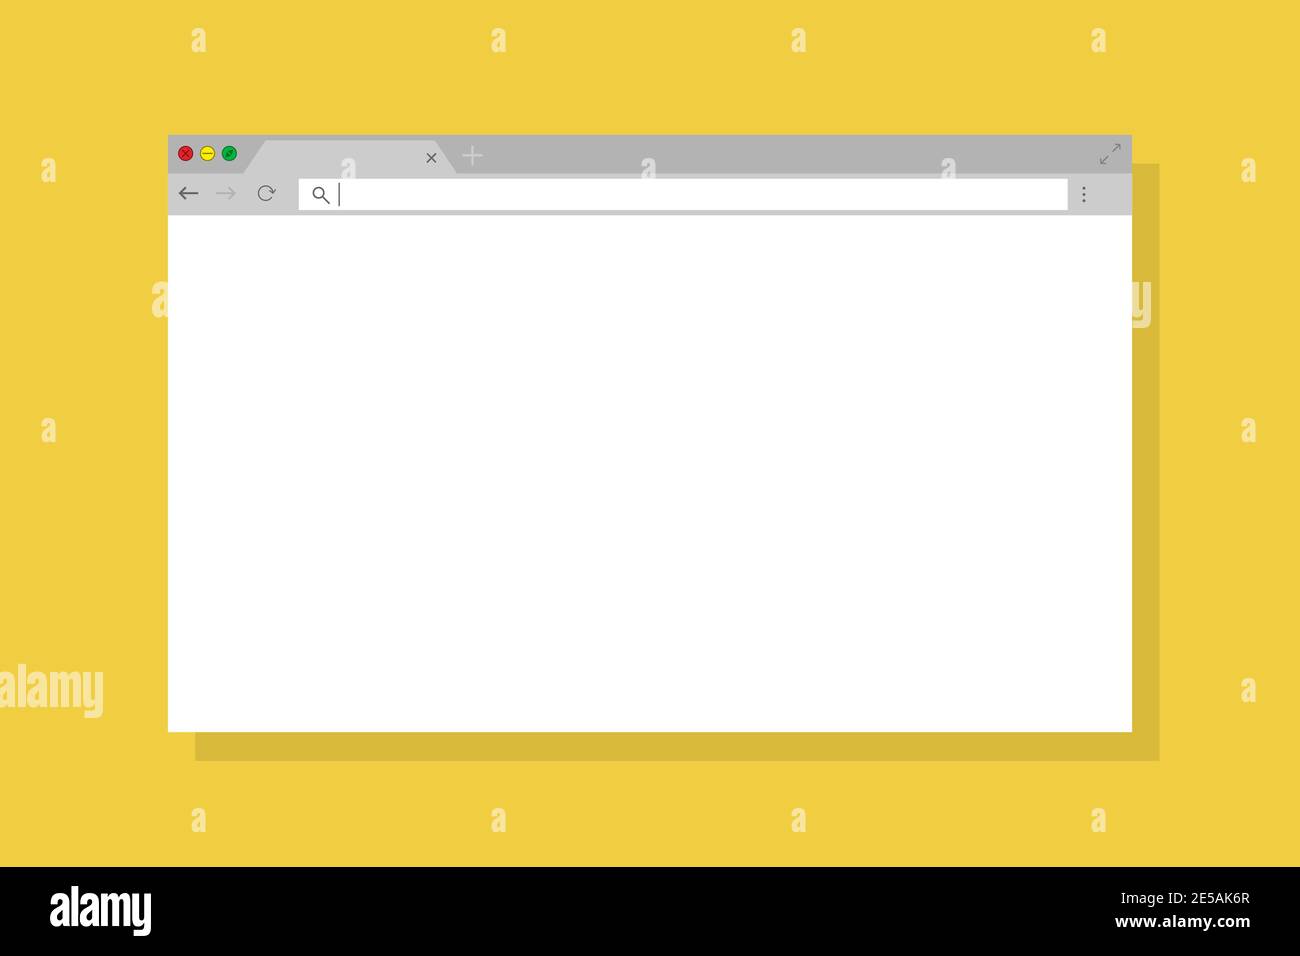 Simple fenêtre de navigateur de conception plate sur fond jaune Illustration de Vecteur